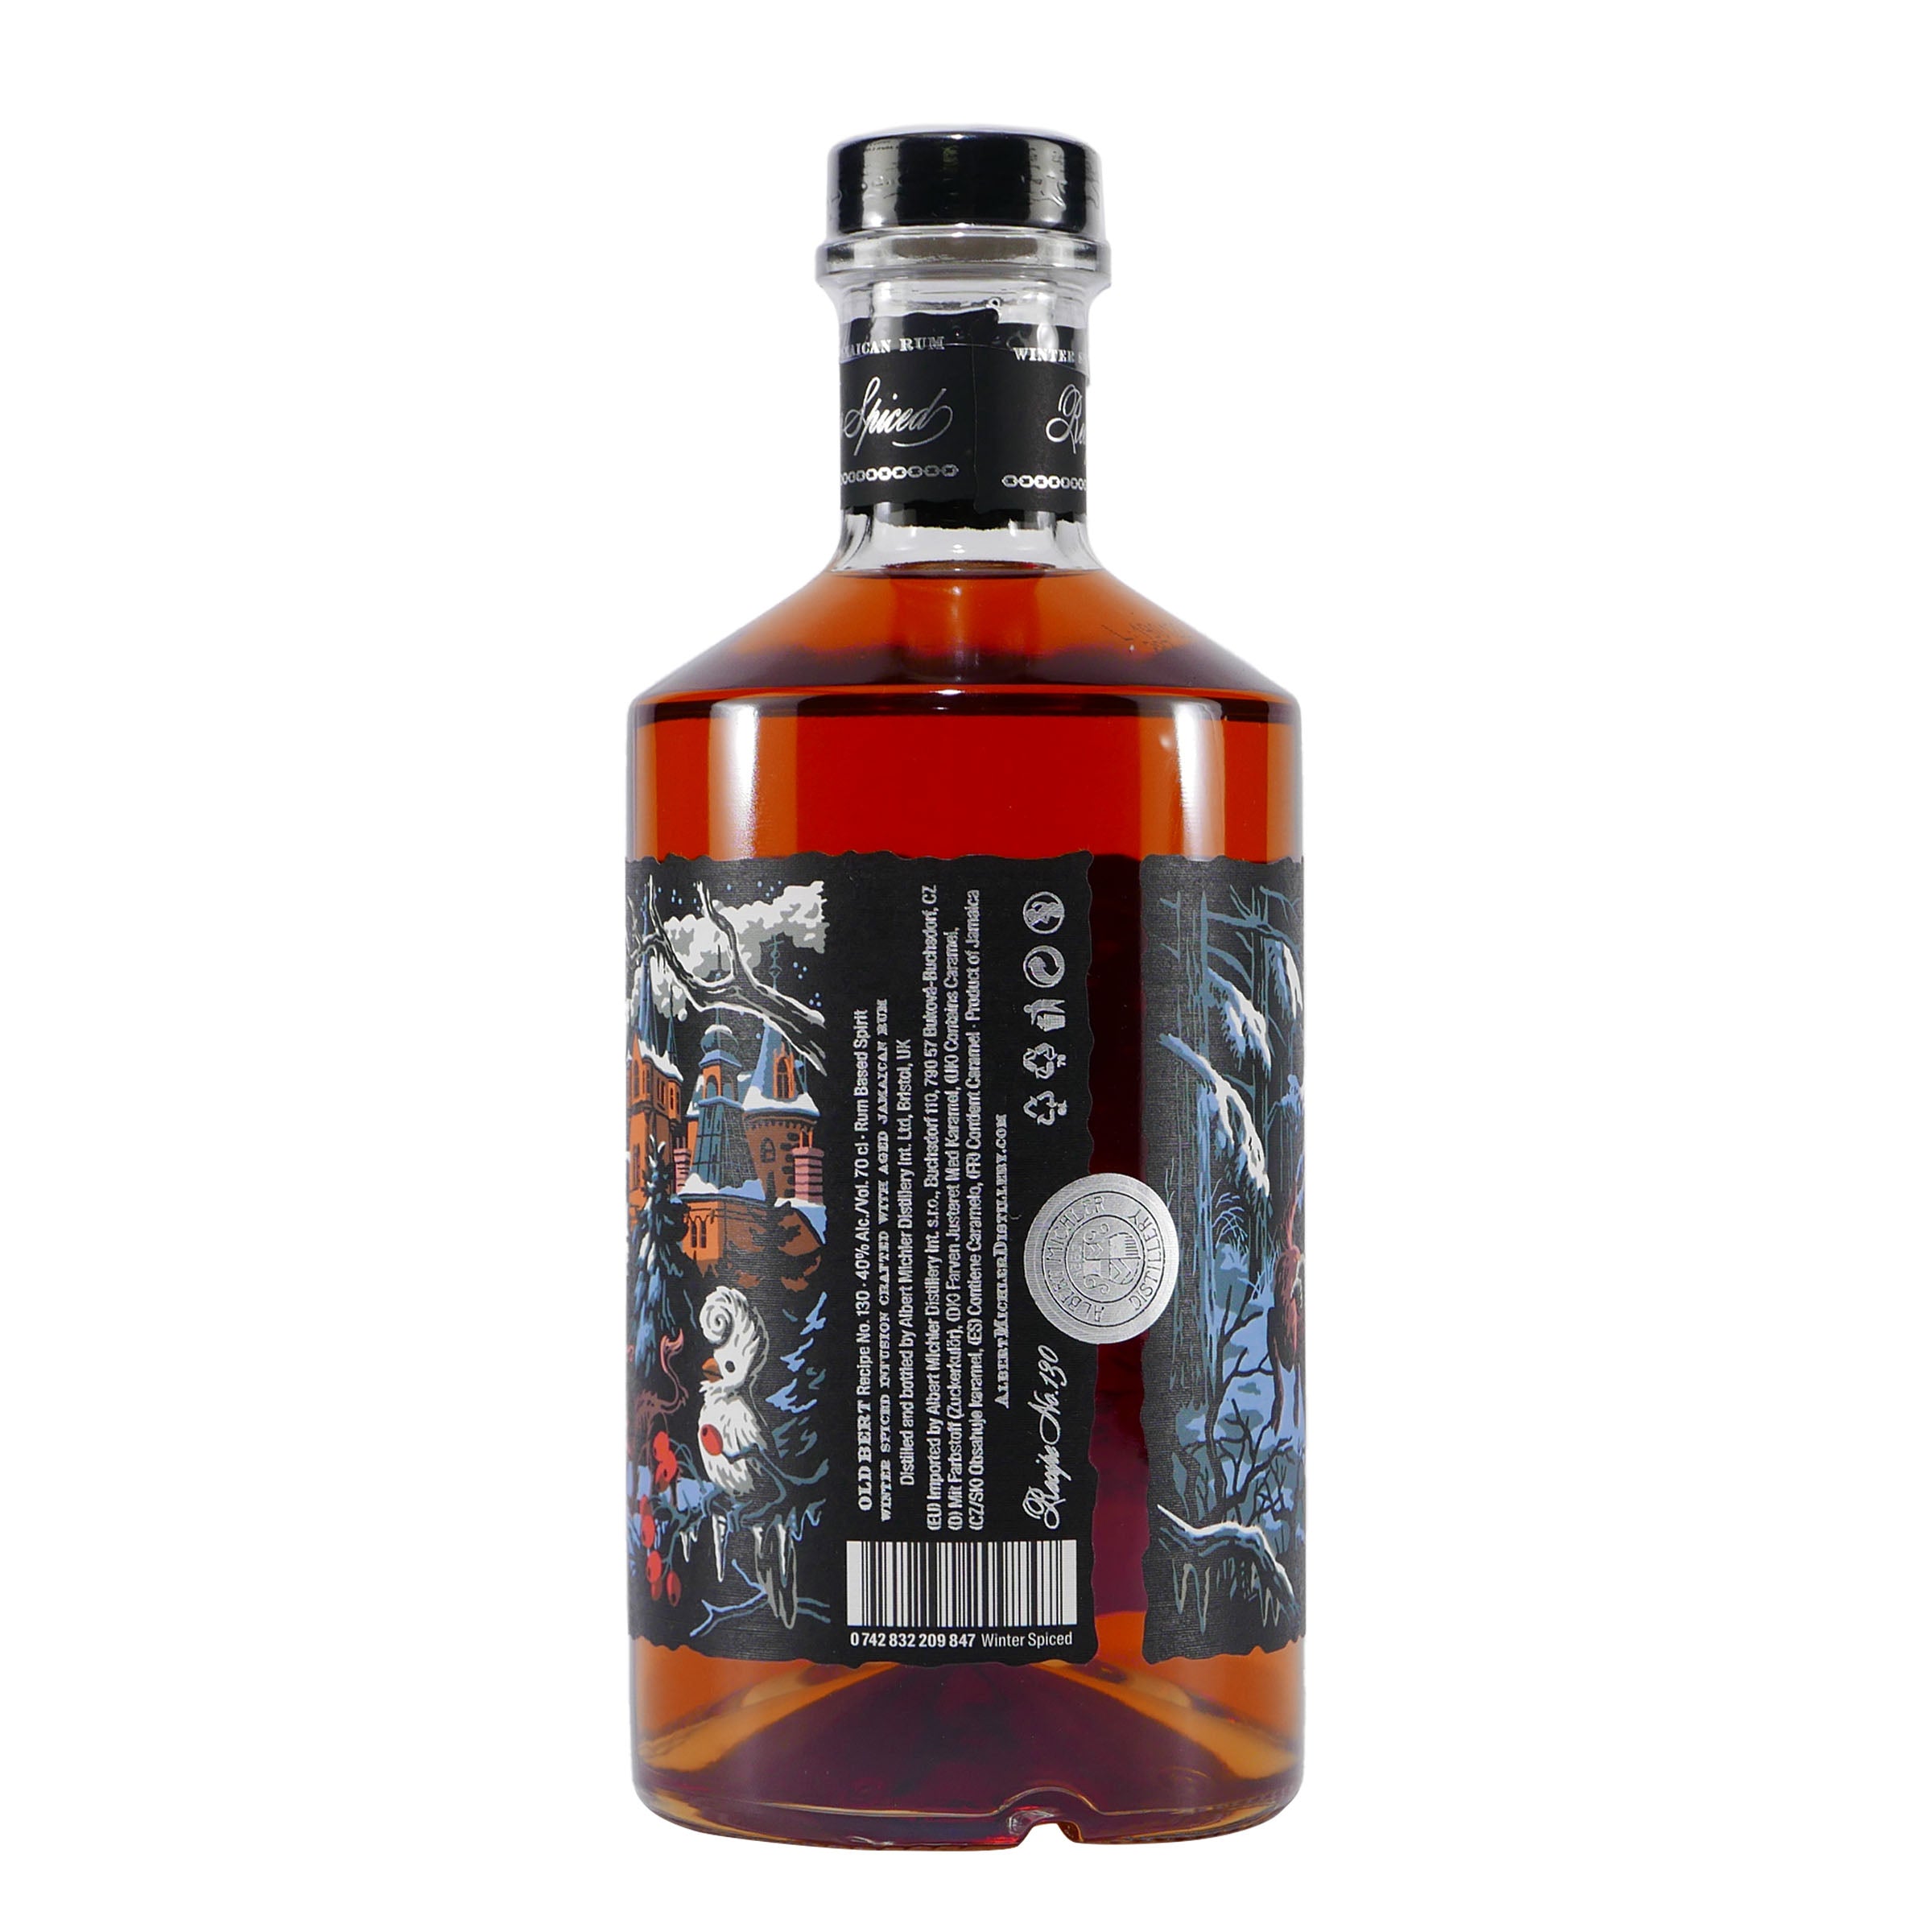 Michlers Old Bert Winter Spiced Rum mit Geschenk-HK